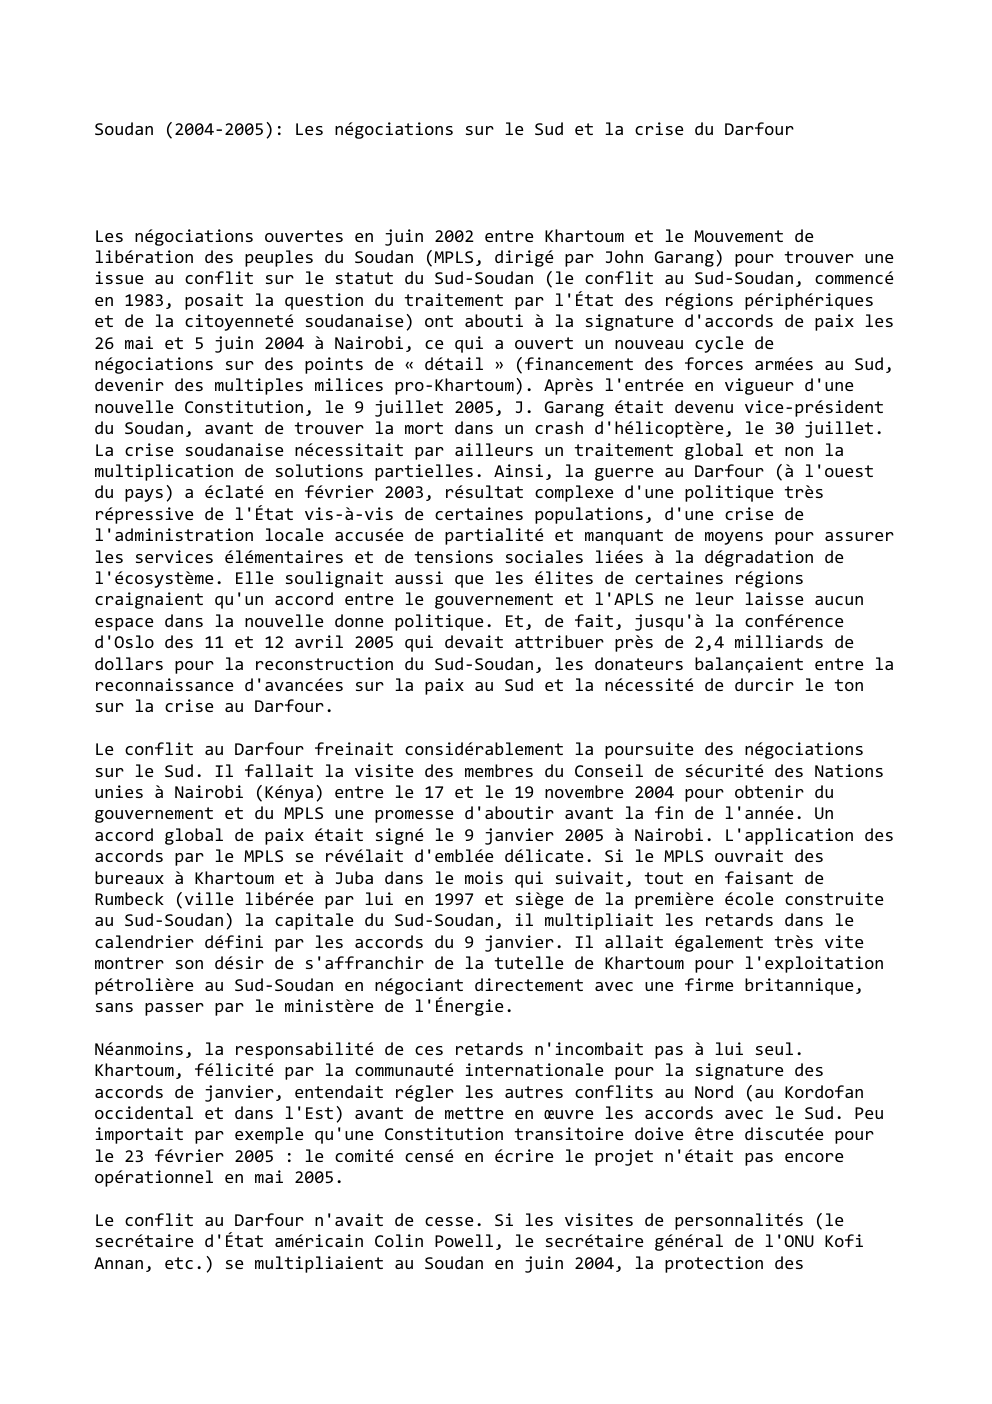 Prévisualisation du document Soudan (2004-2005): Les négociations sur le Sud et la crise du Darfour

Les négociations ouvertes en juin 2002 entre Khartoum...